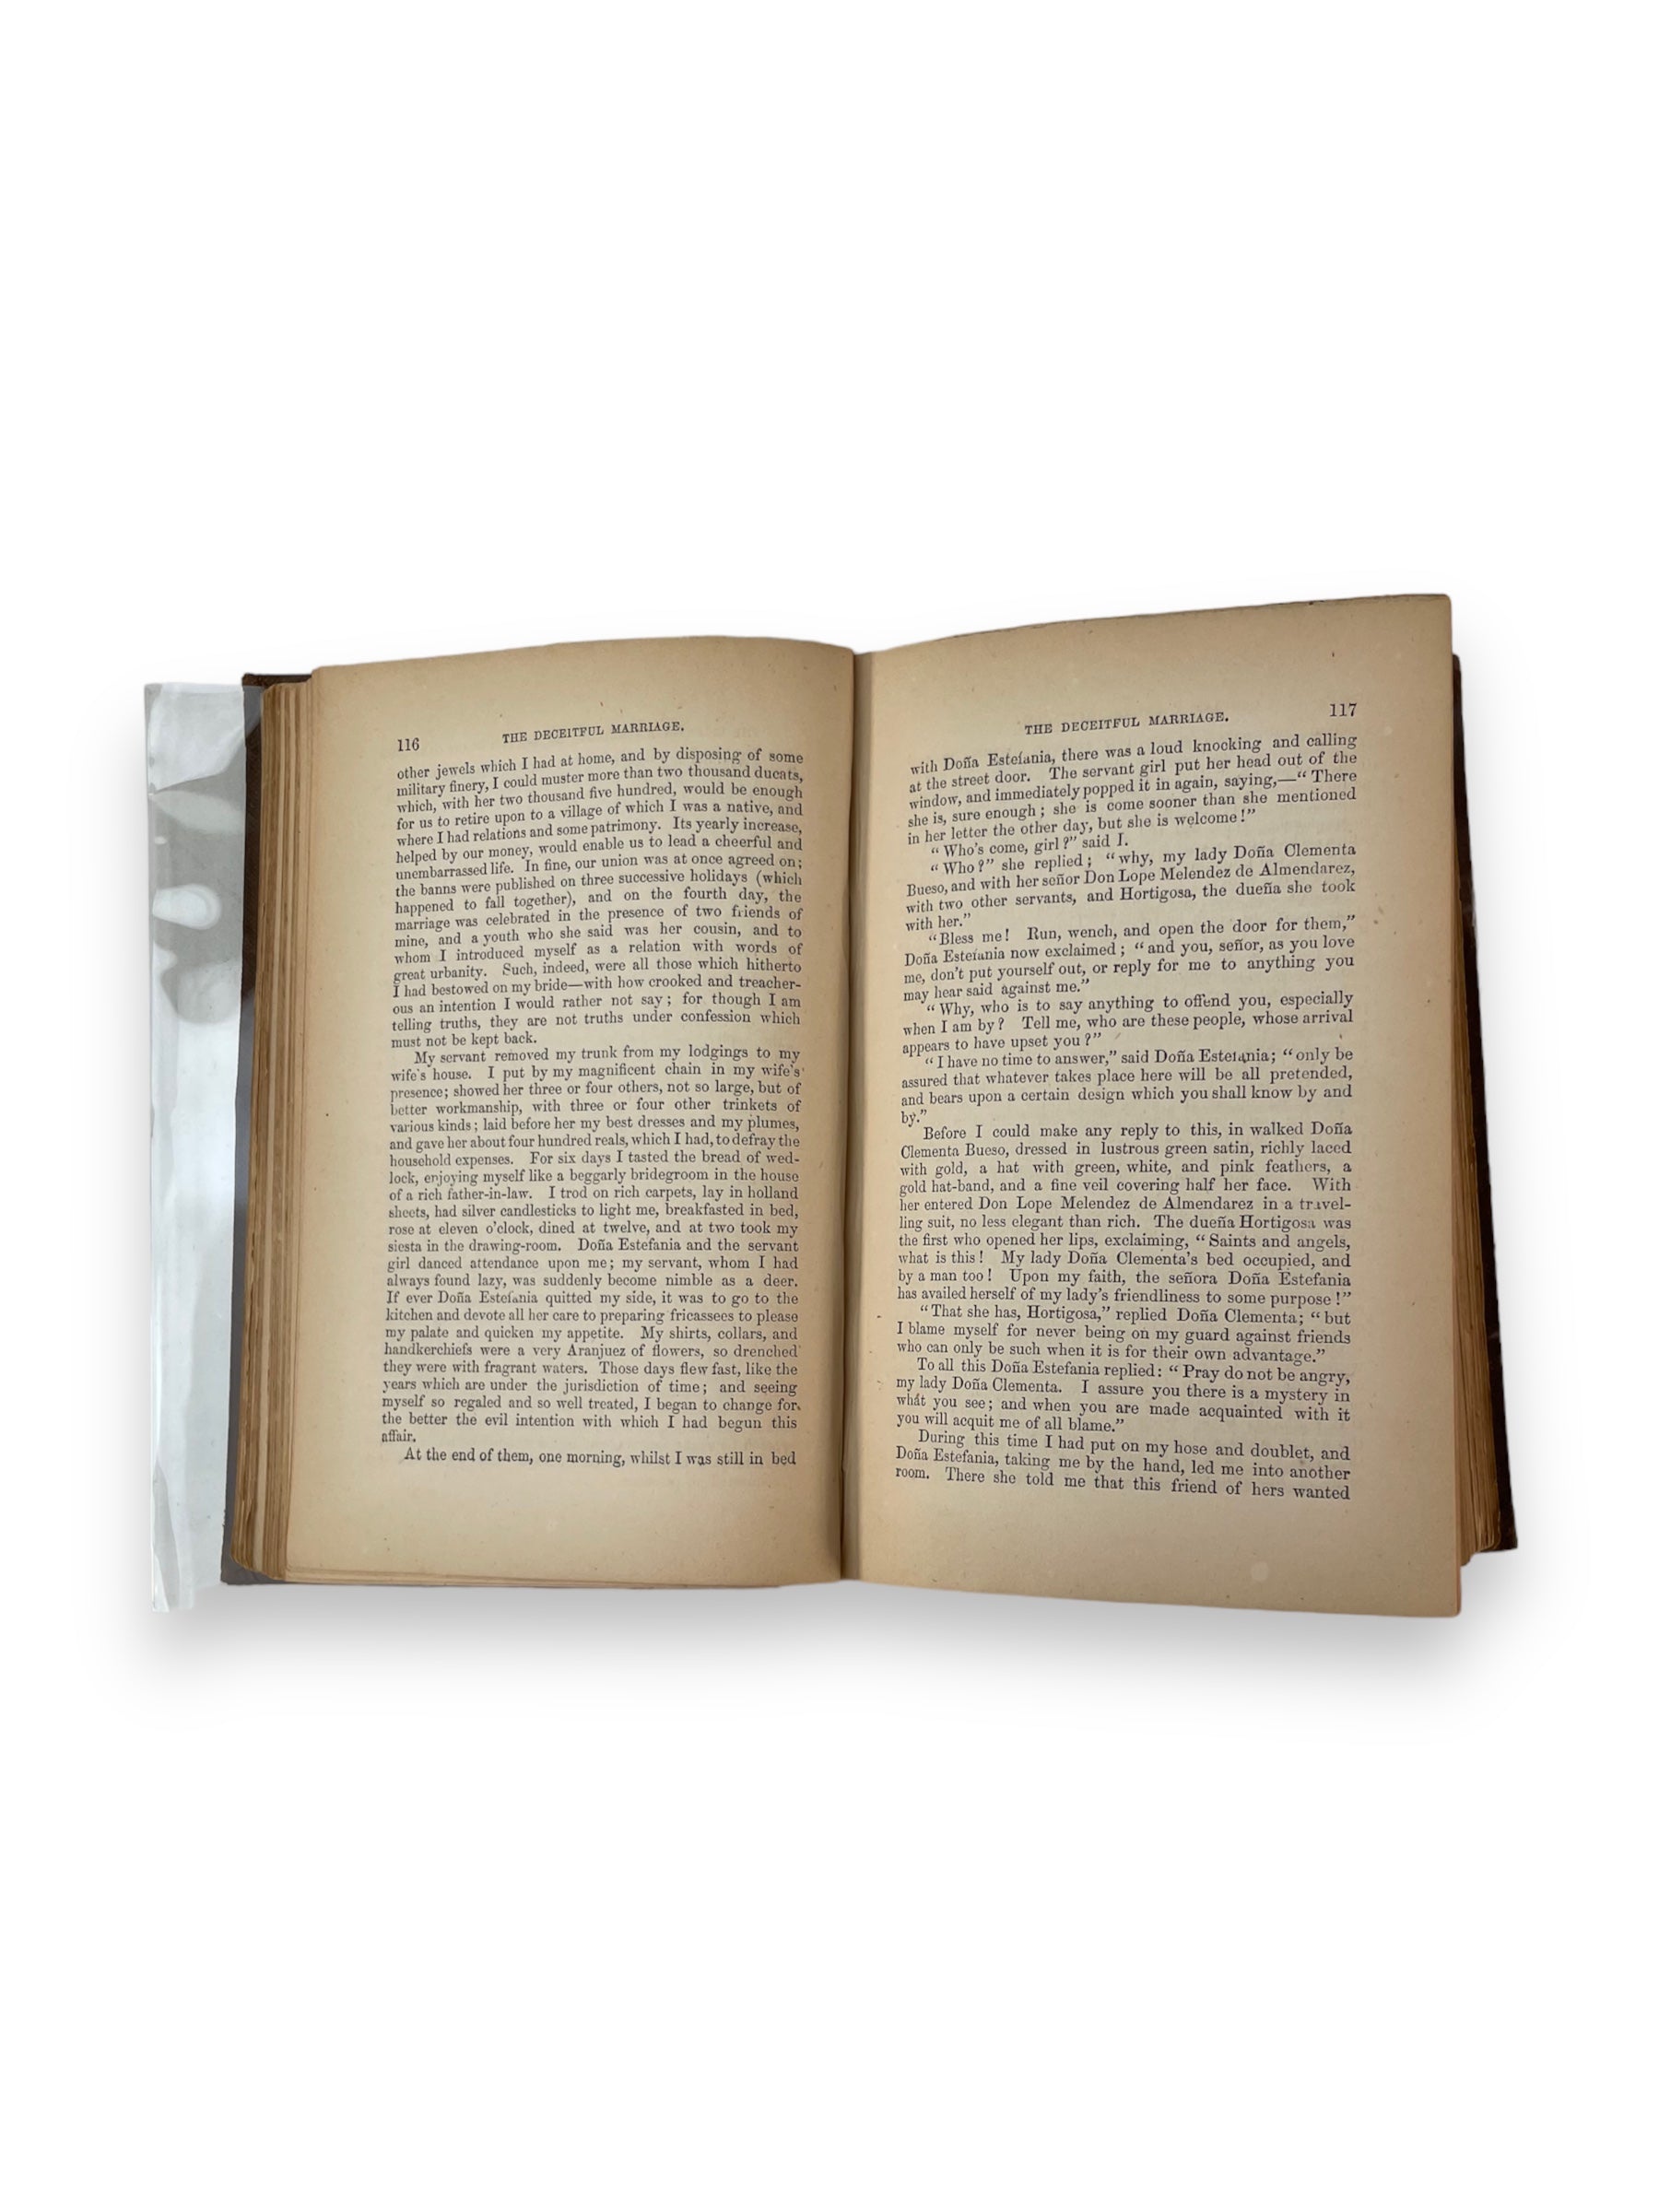 "Cervantes Exemplary Novels" publié par Bell et Daldy : volume supplémentaire dans la collection Bohn